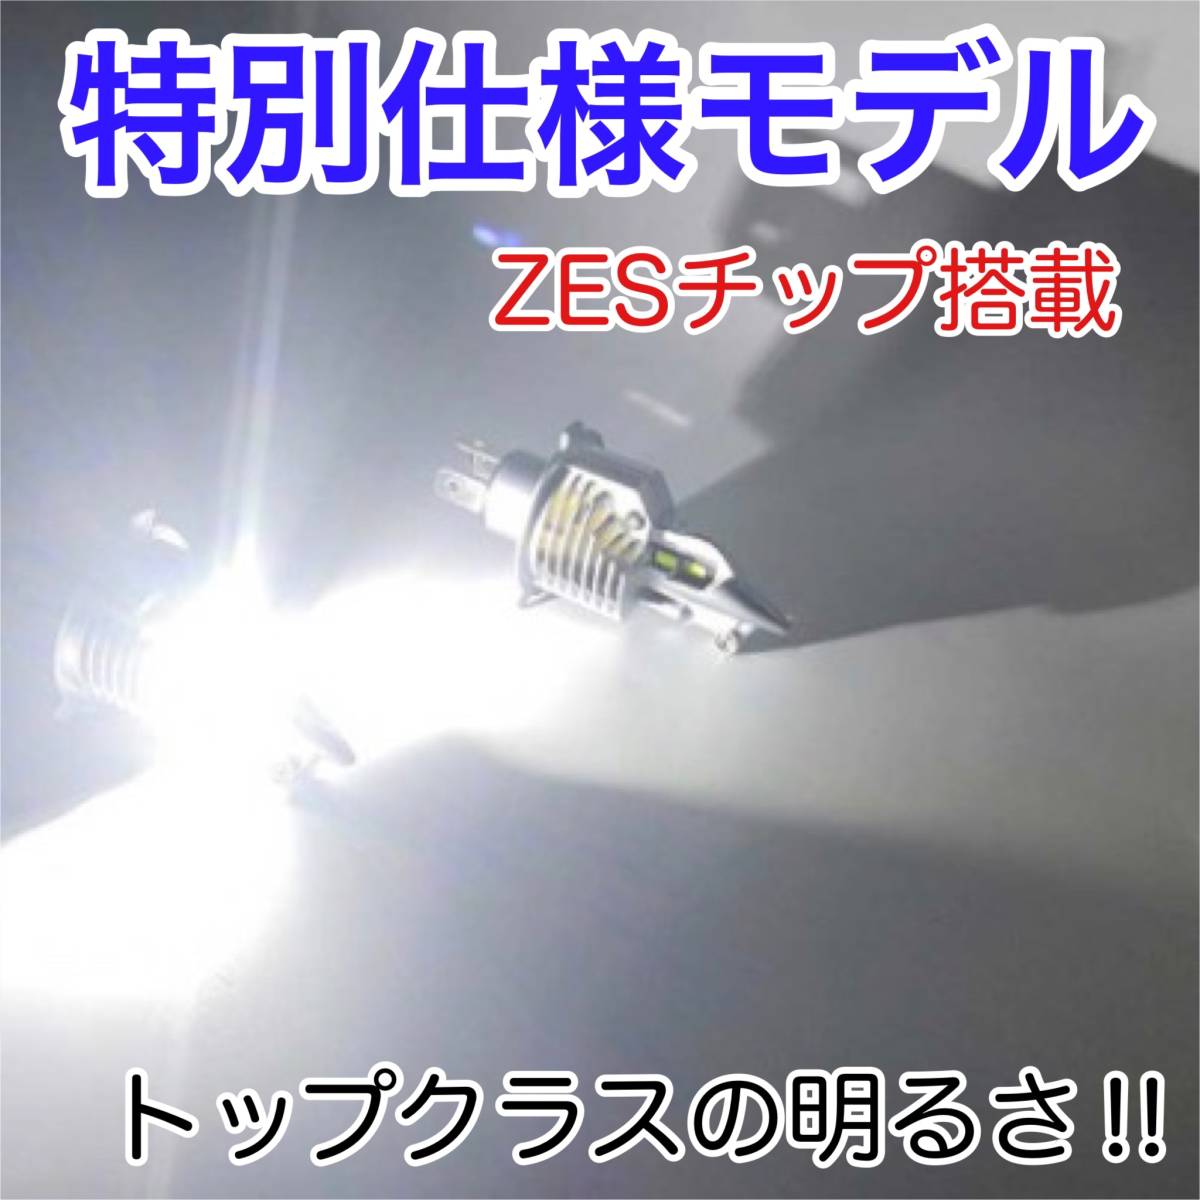 SUZUKI スズキ RF900R GT73E LEDヘッドライト H4 Hi/Lo バルブ バイク用 1灯 S25 テールランプ2個 ホワイト 交換用